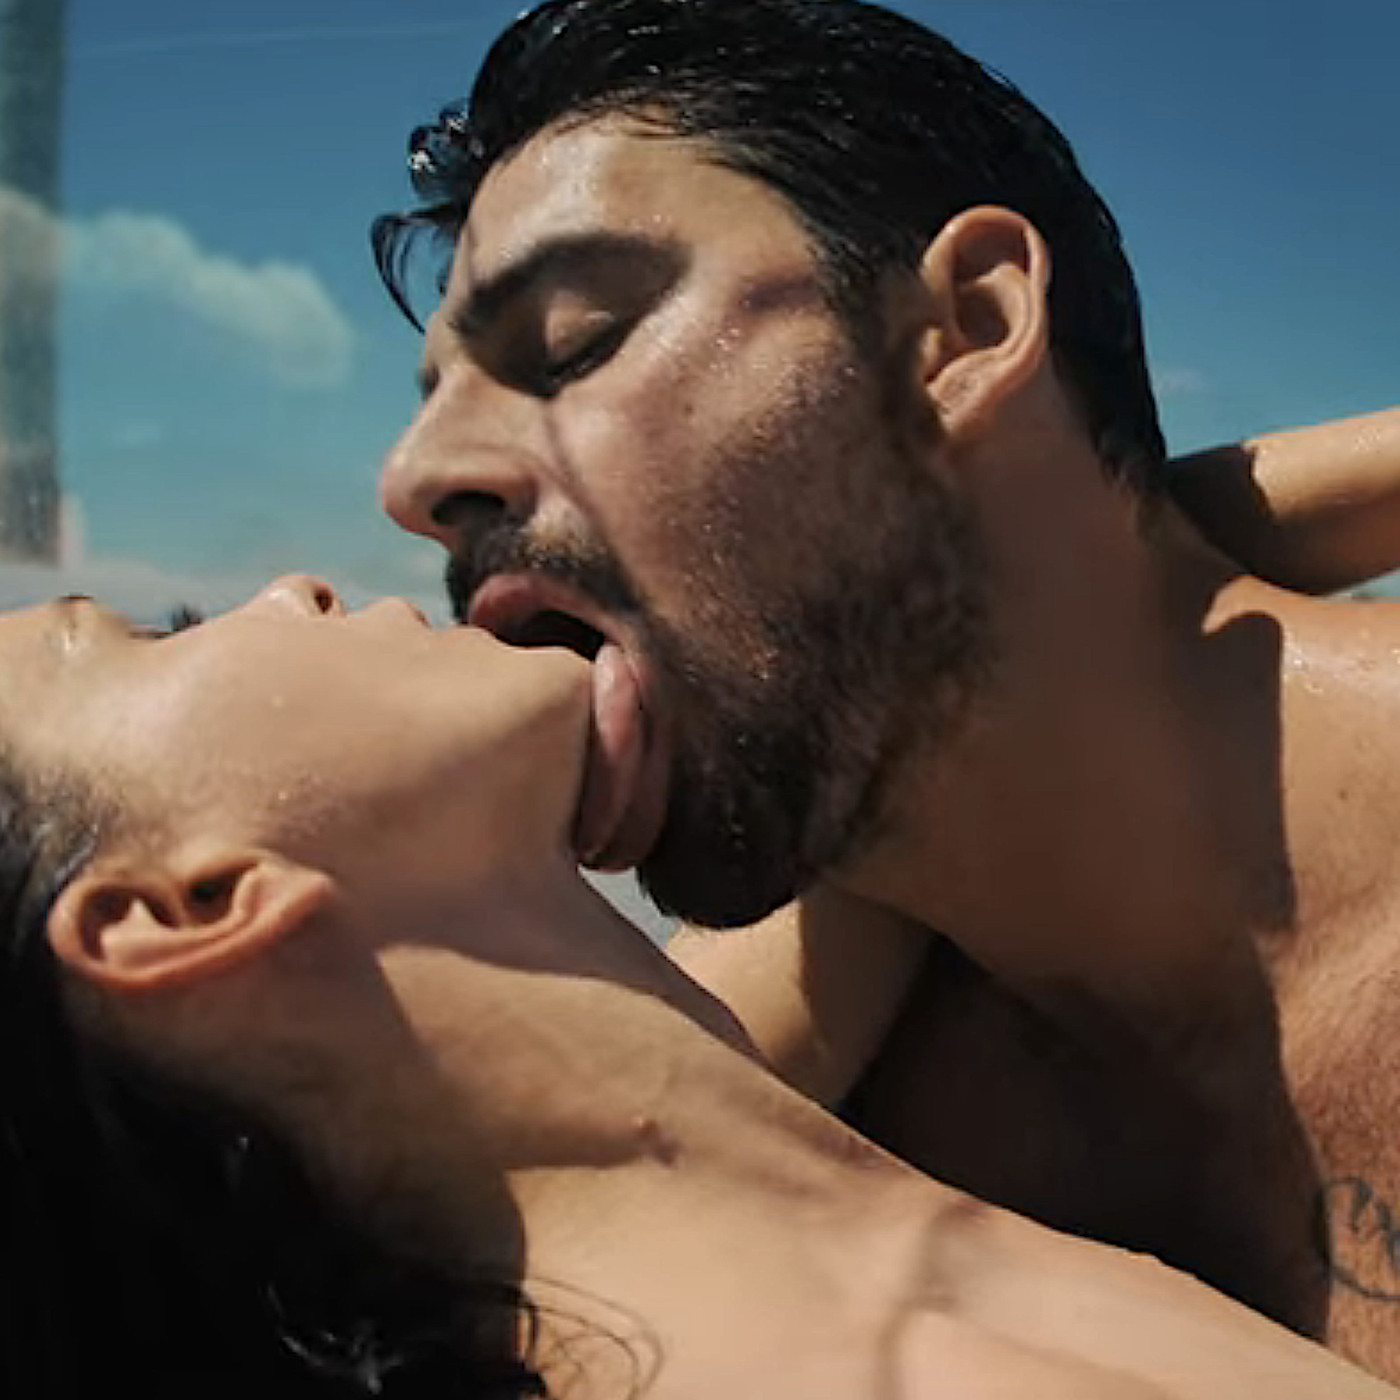 Skyscraper reccomend polish erotic films must admit